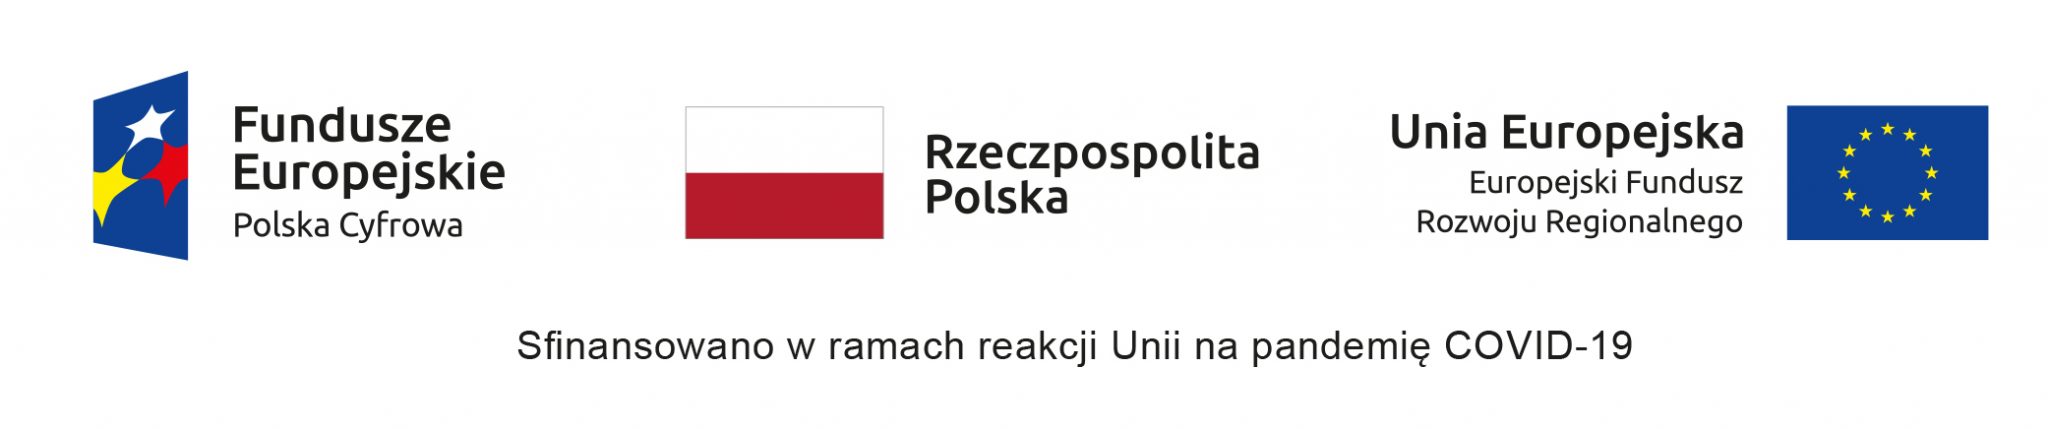 Logotyp przedstawiający logotypy Funduszy Europejskich, Rzeczpospolitej Polskiej i Unii Europejskiej.